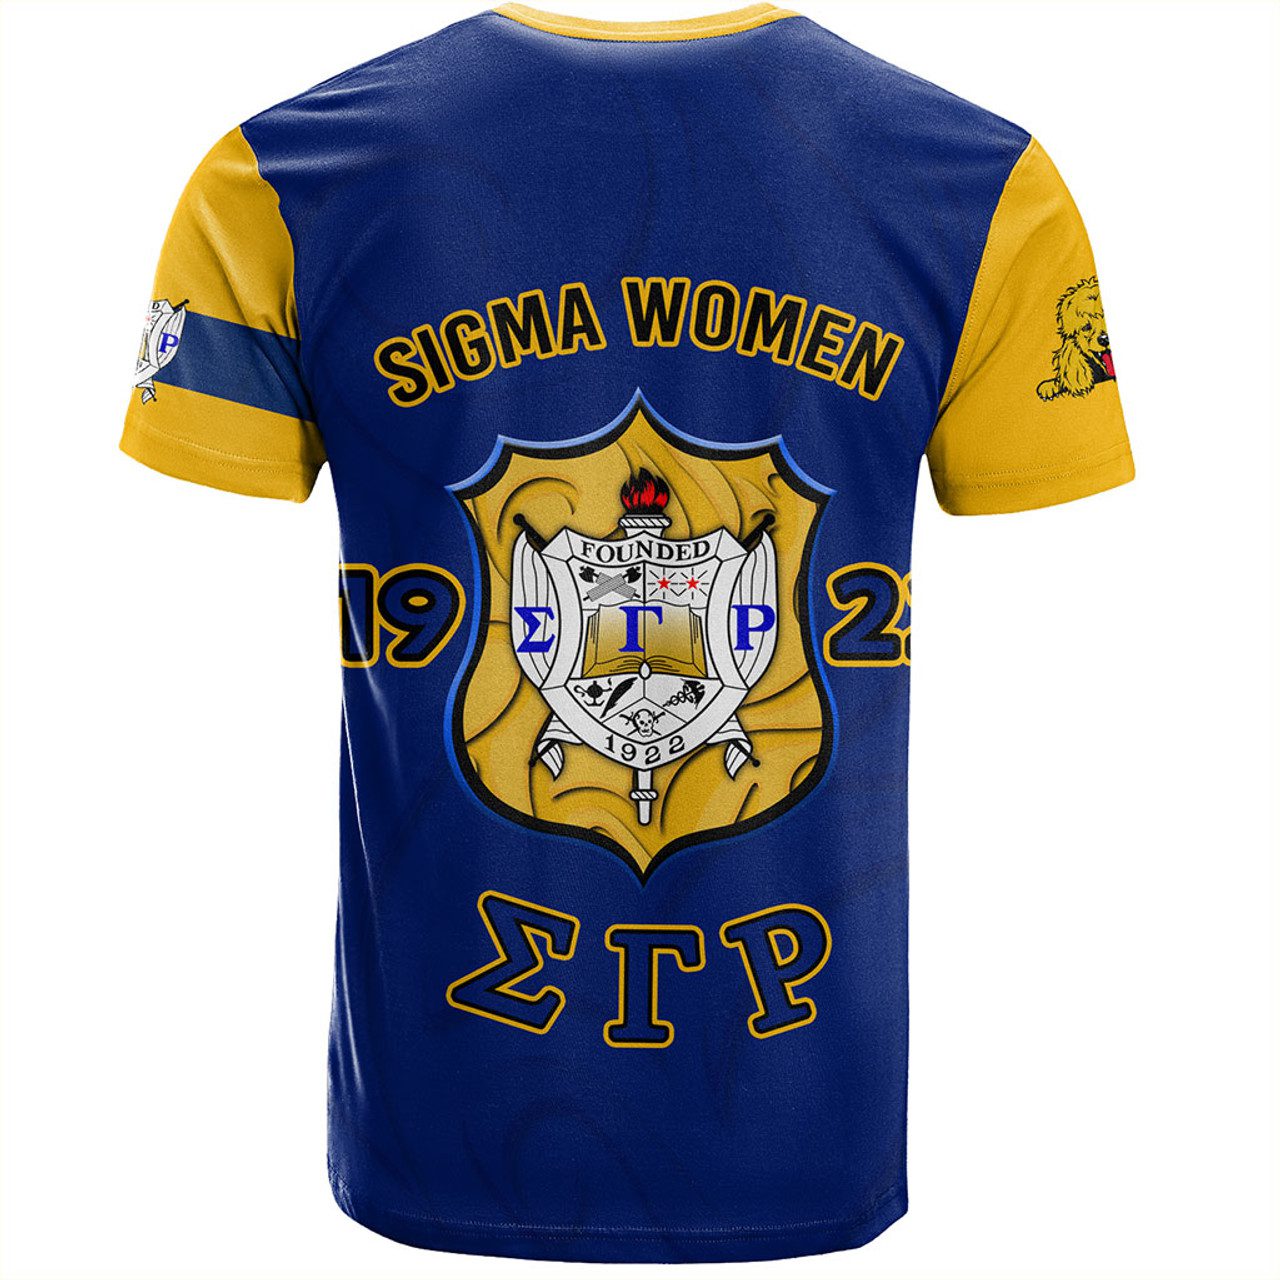 Sigma Gamma Rho T-Shirt Motto